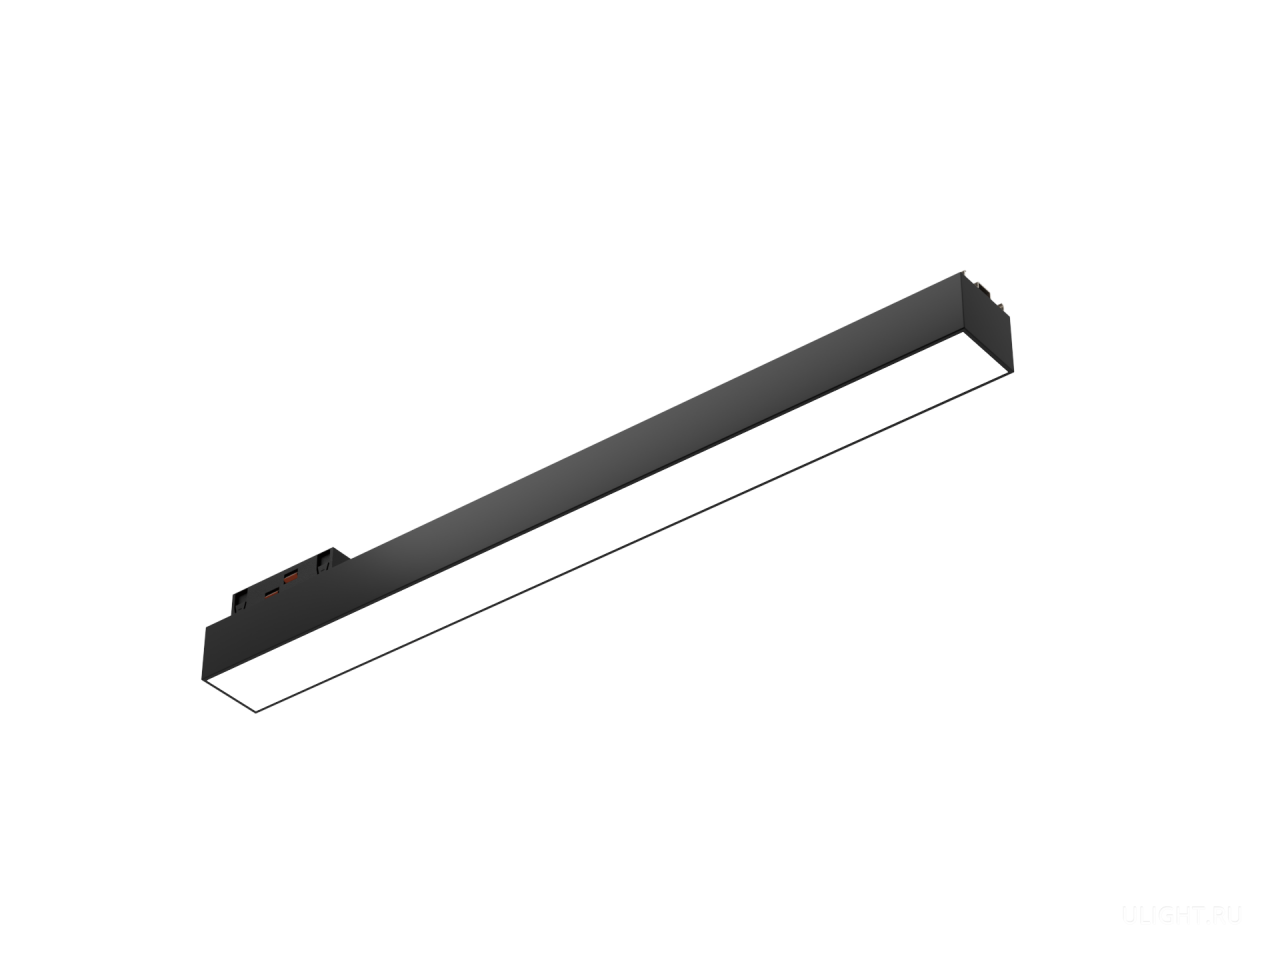 Линейные трековые светильники можно размещать по одному или же создавать непрерывную линию света. Благодаря матовому рассеивателю и широкому углу света 120° TrackLine LF обеспечивает высокий уровень зрительного комфорта и исключает слепящий эффект. 